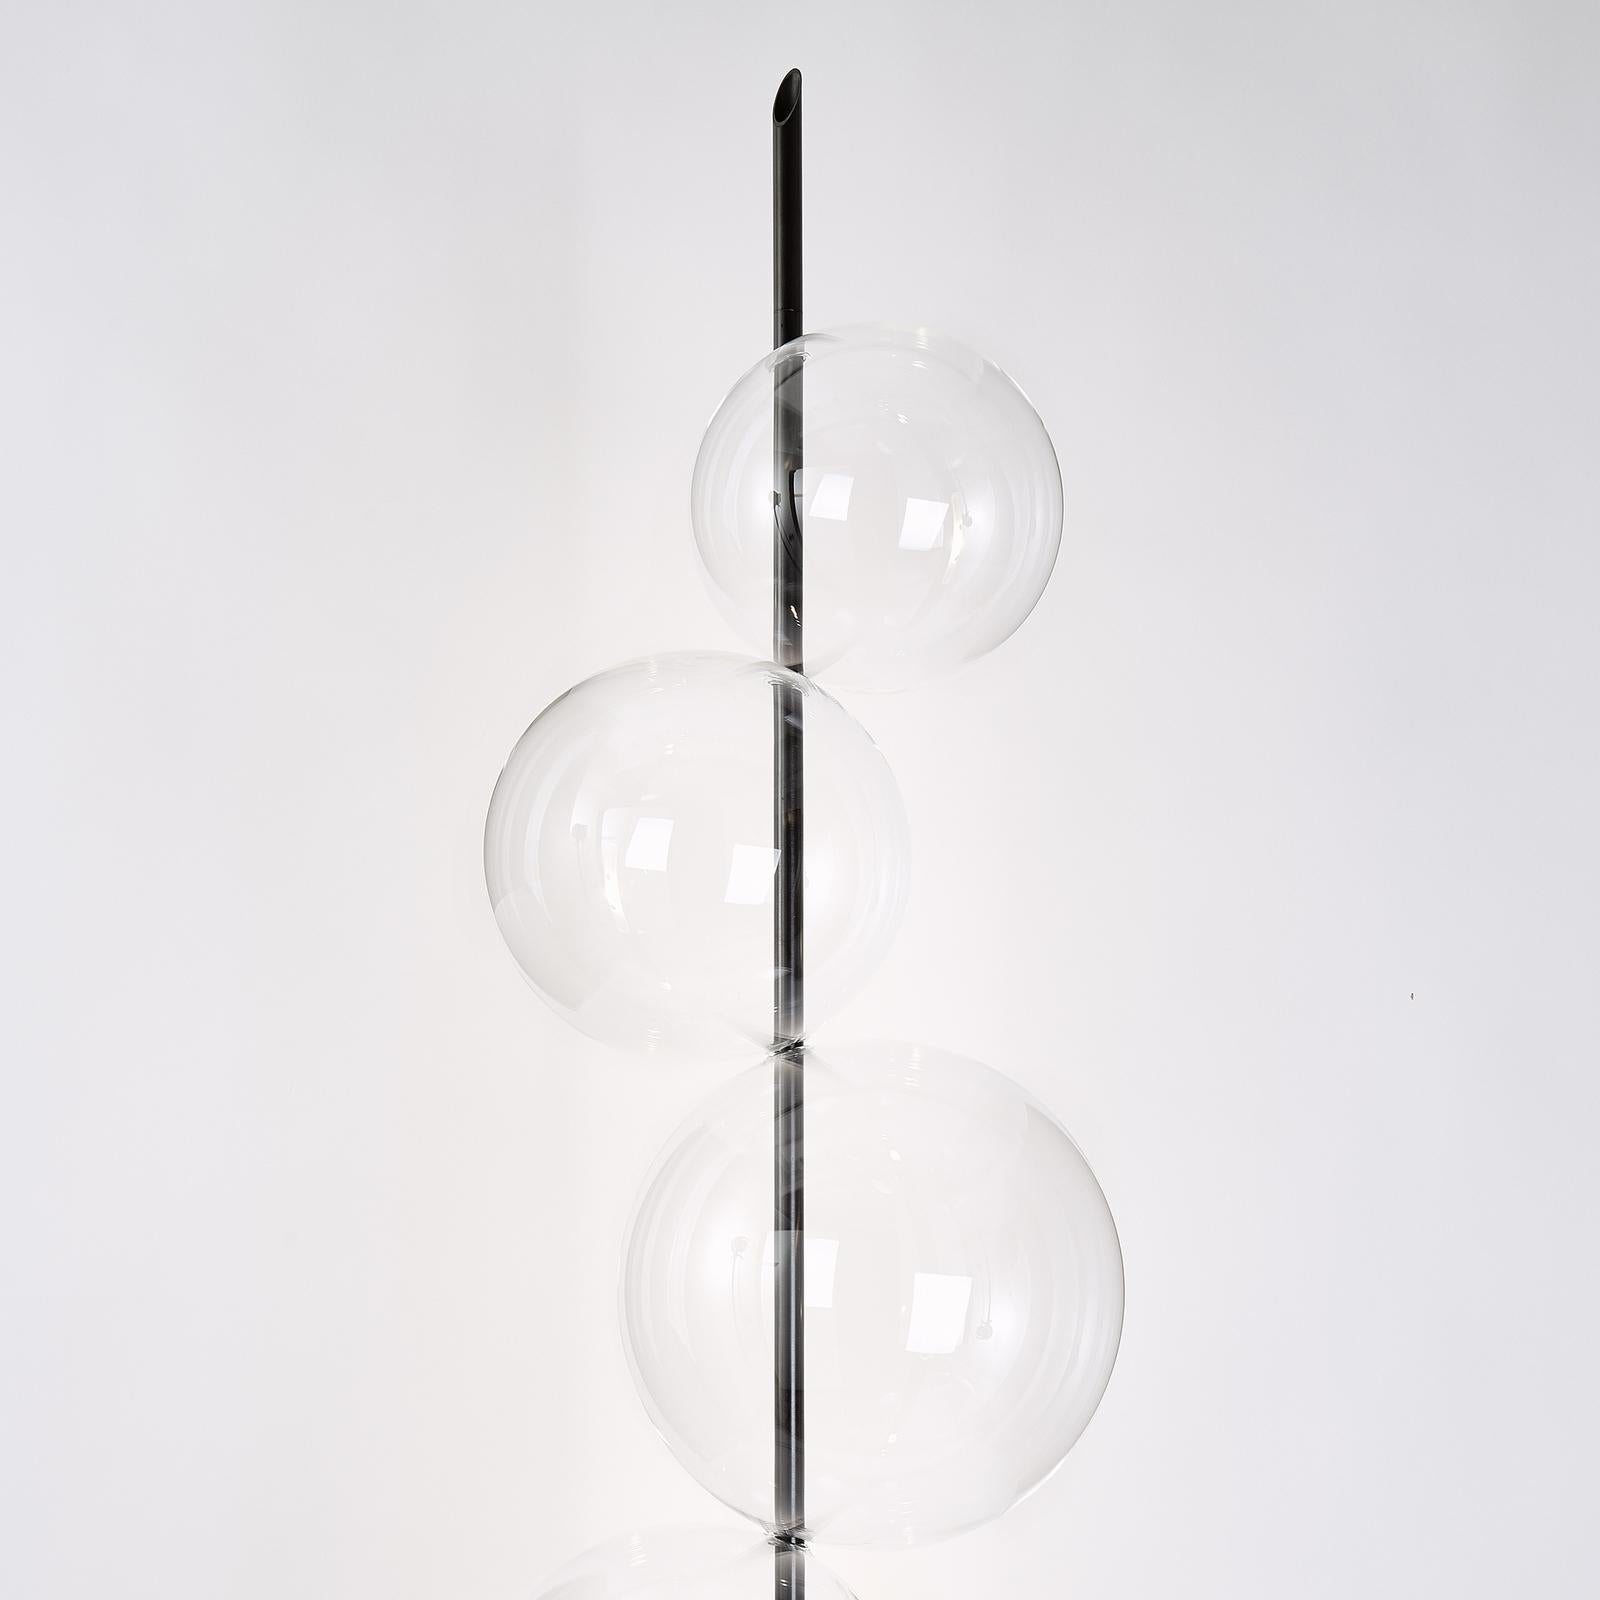 Ce superbe lampadaire se compose de cinq sphères en verre transparent de différentes tailles assemblées sur un poteau cylindrique et une base en laiton bruni, pour former une Silhouette organique abstraite rappelant les grappes de bulles de savon.